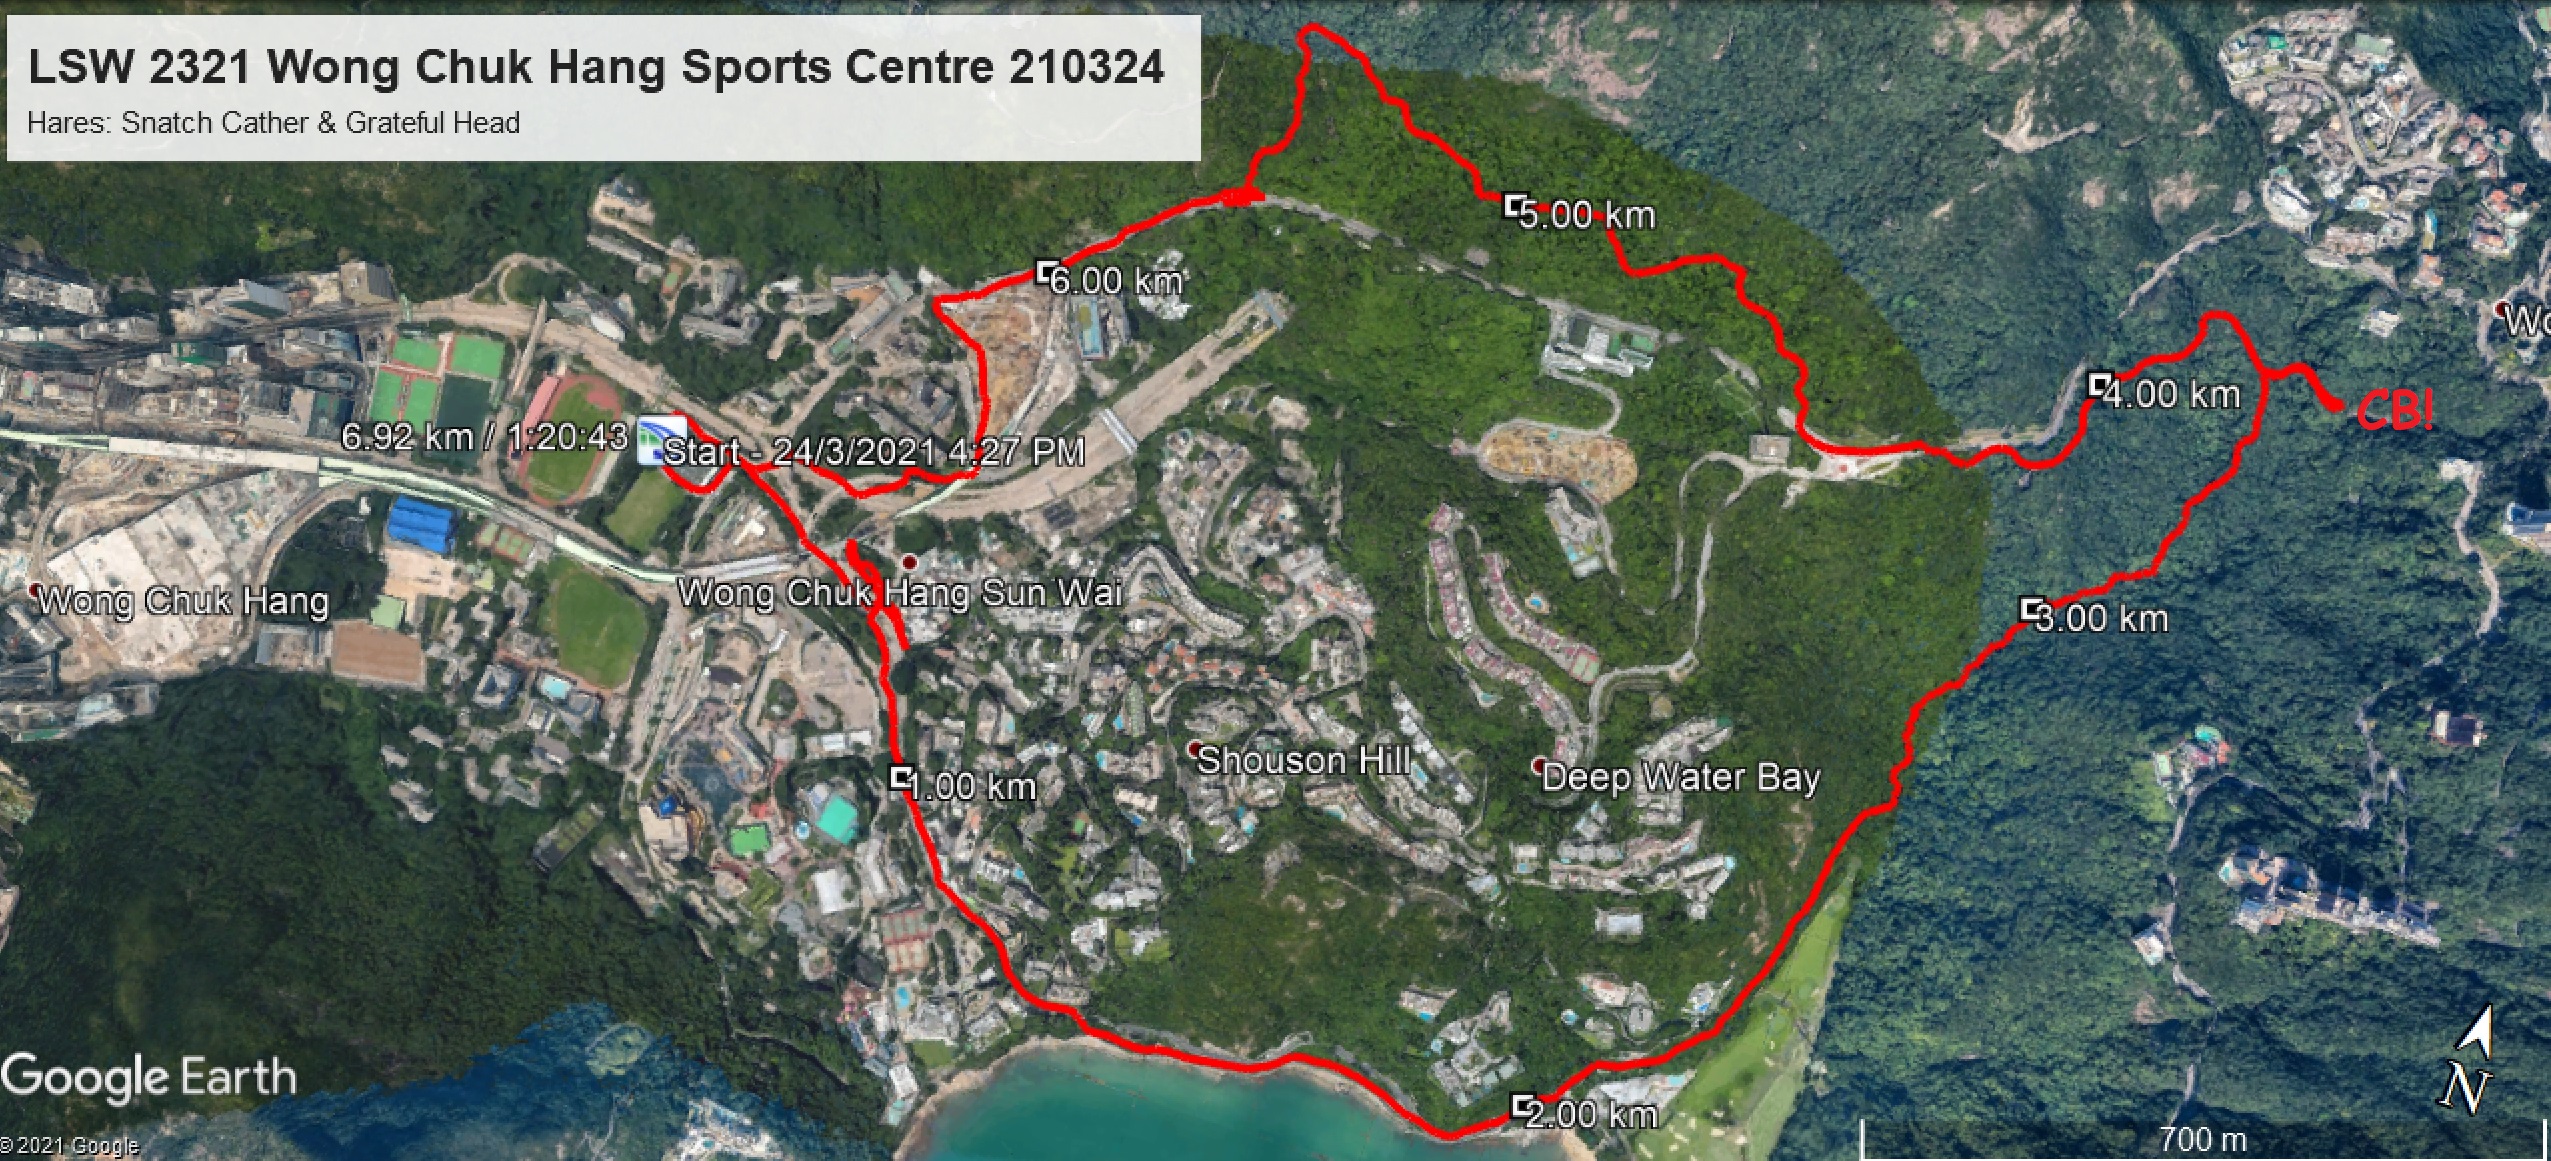  Wong Chuk Hang Sports Centre 210324 6.92km